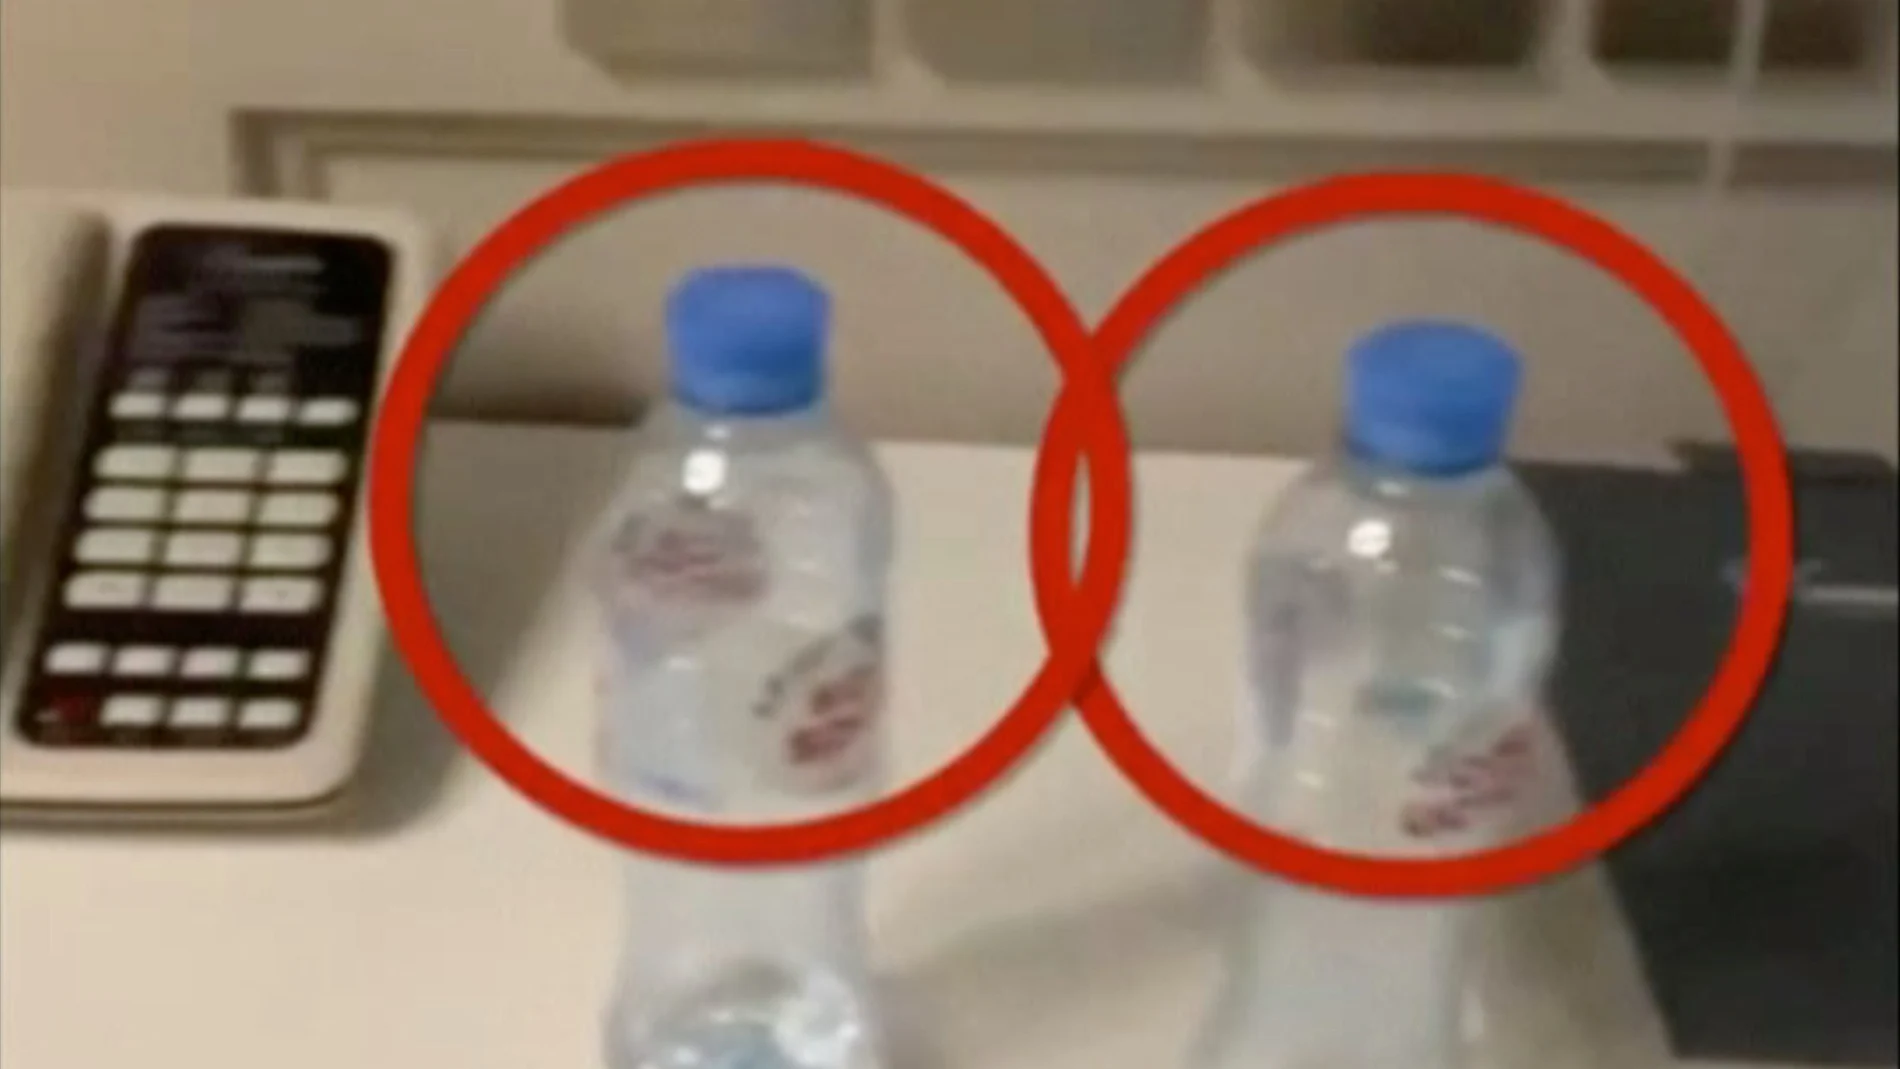 Botellas de agua en la habitación de hotel